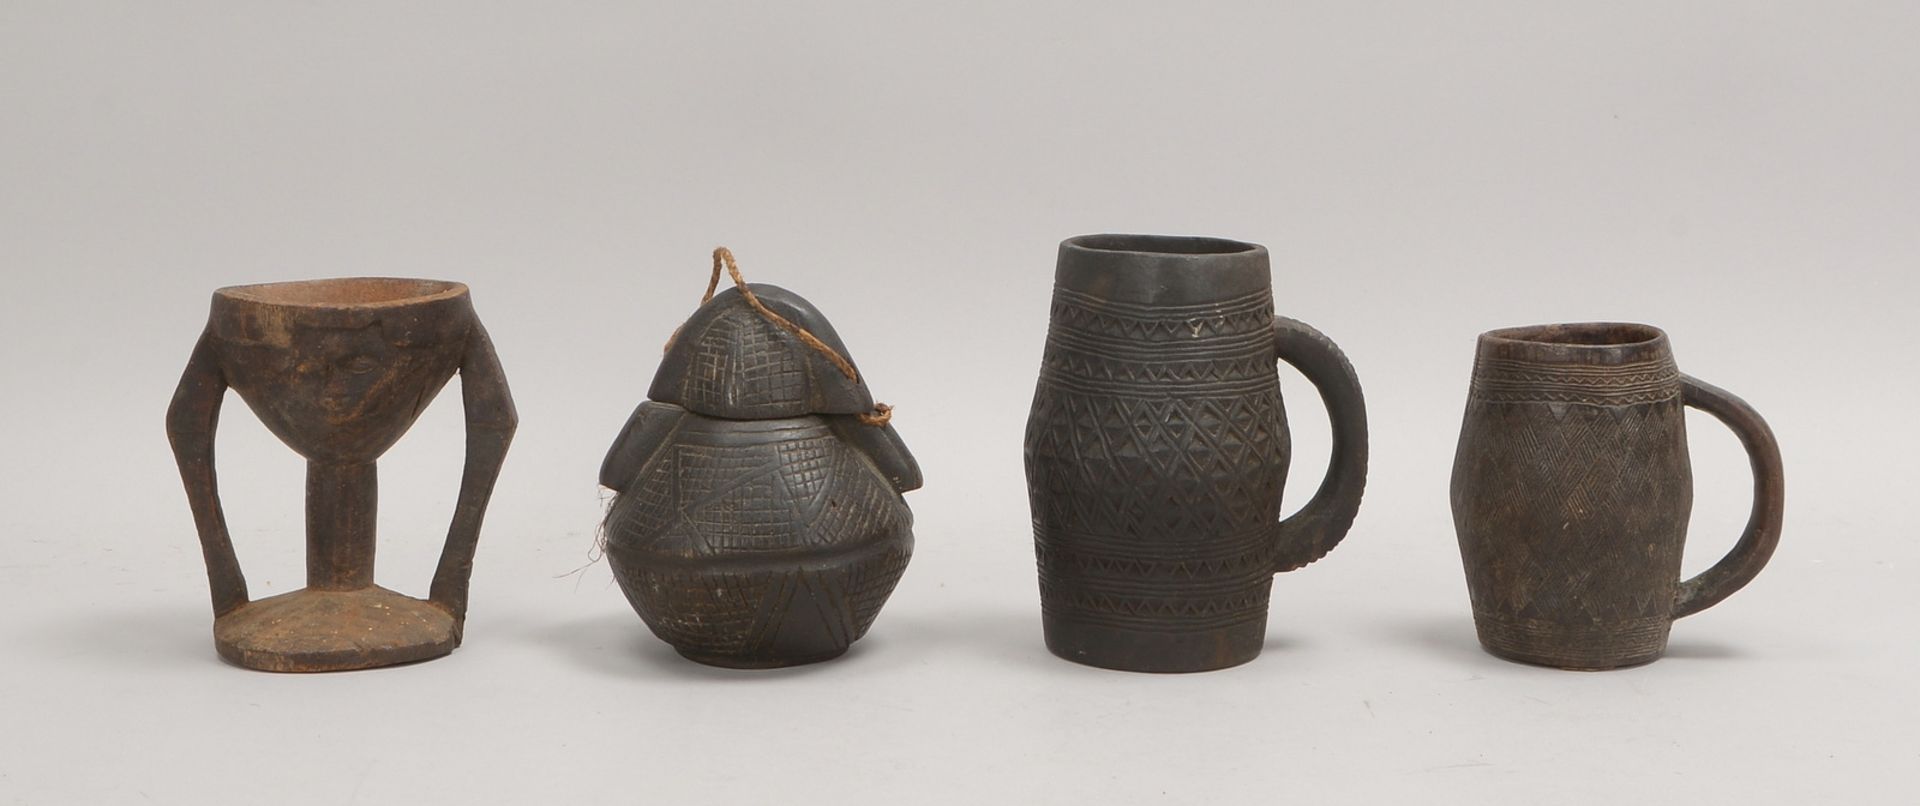 4 Trinkgefäße, Holz, teils mit geometr. Ornamentierung: 2x Krüge, 1 Kelch, 1 Trinkflasche